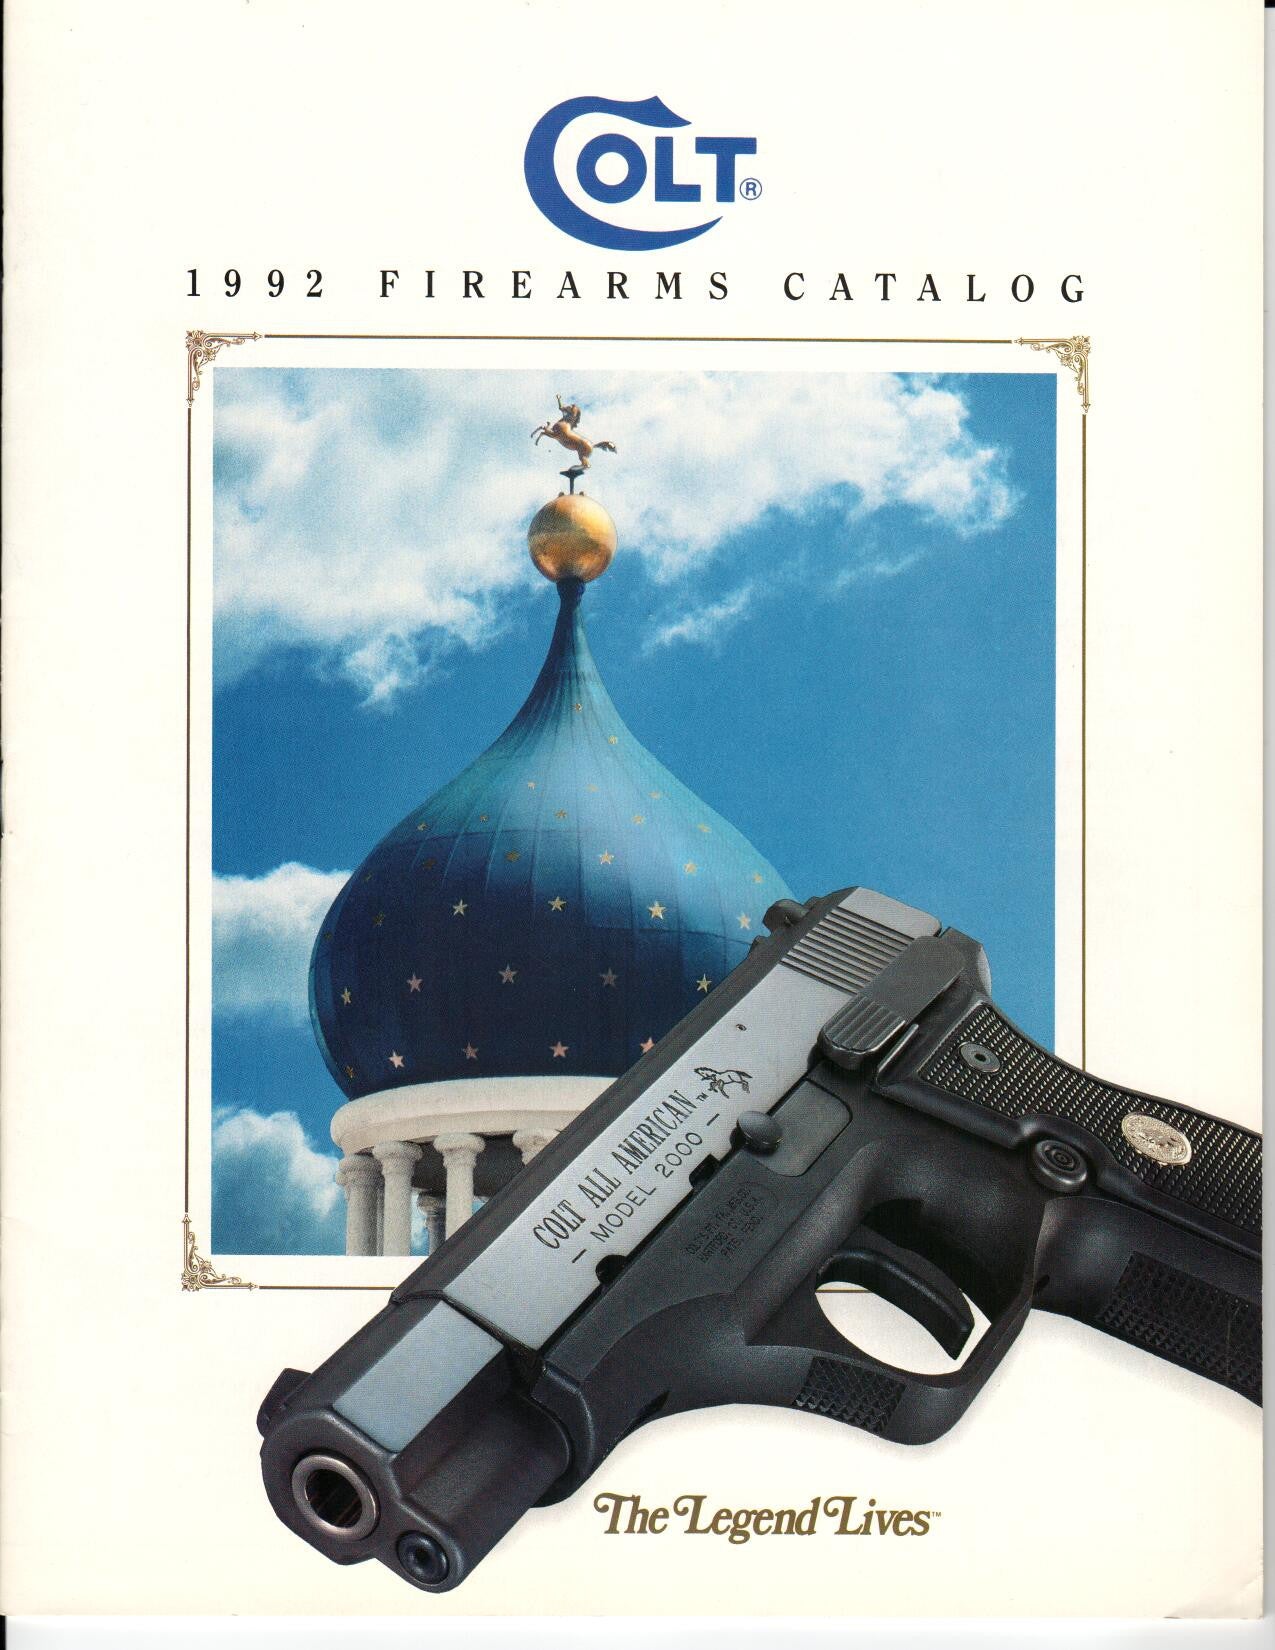 Colt 1992 Firearms Catalogue 'The Legend Lives'